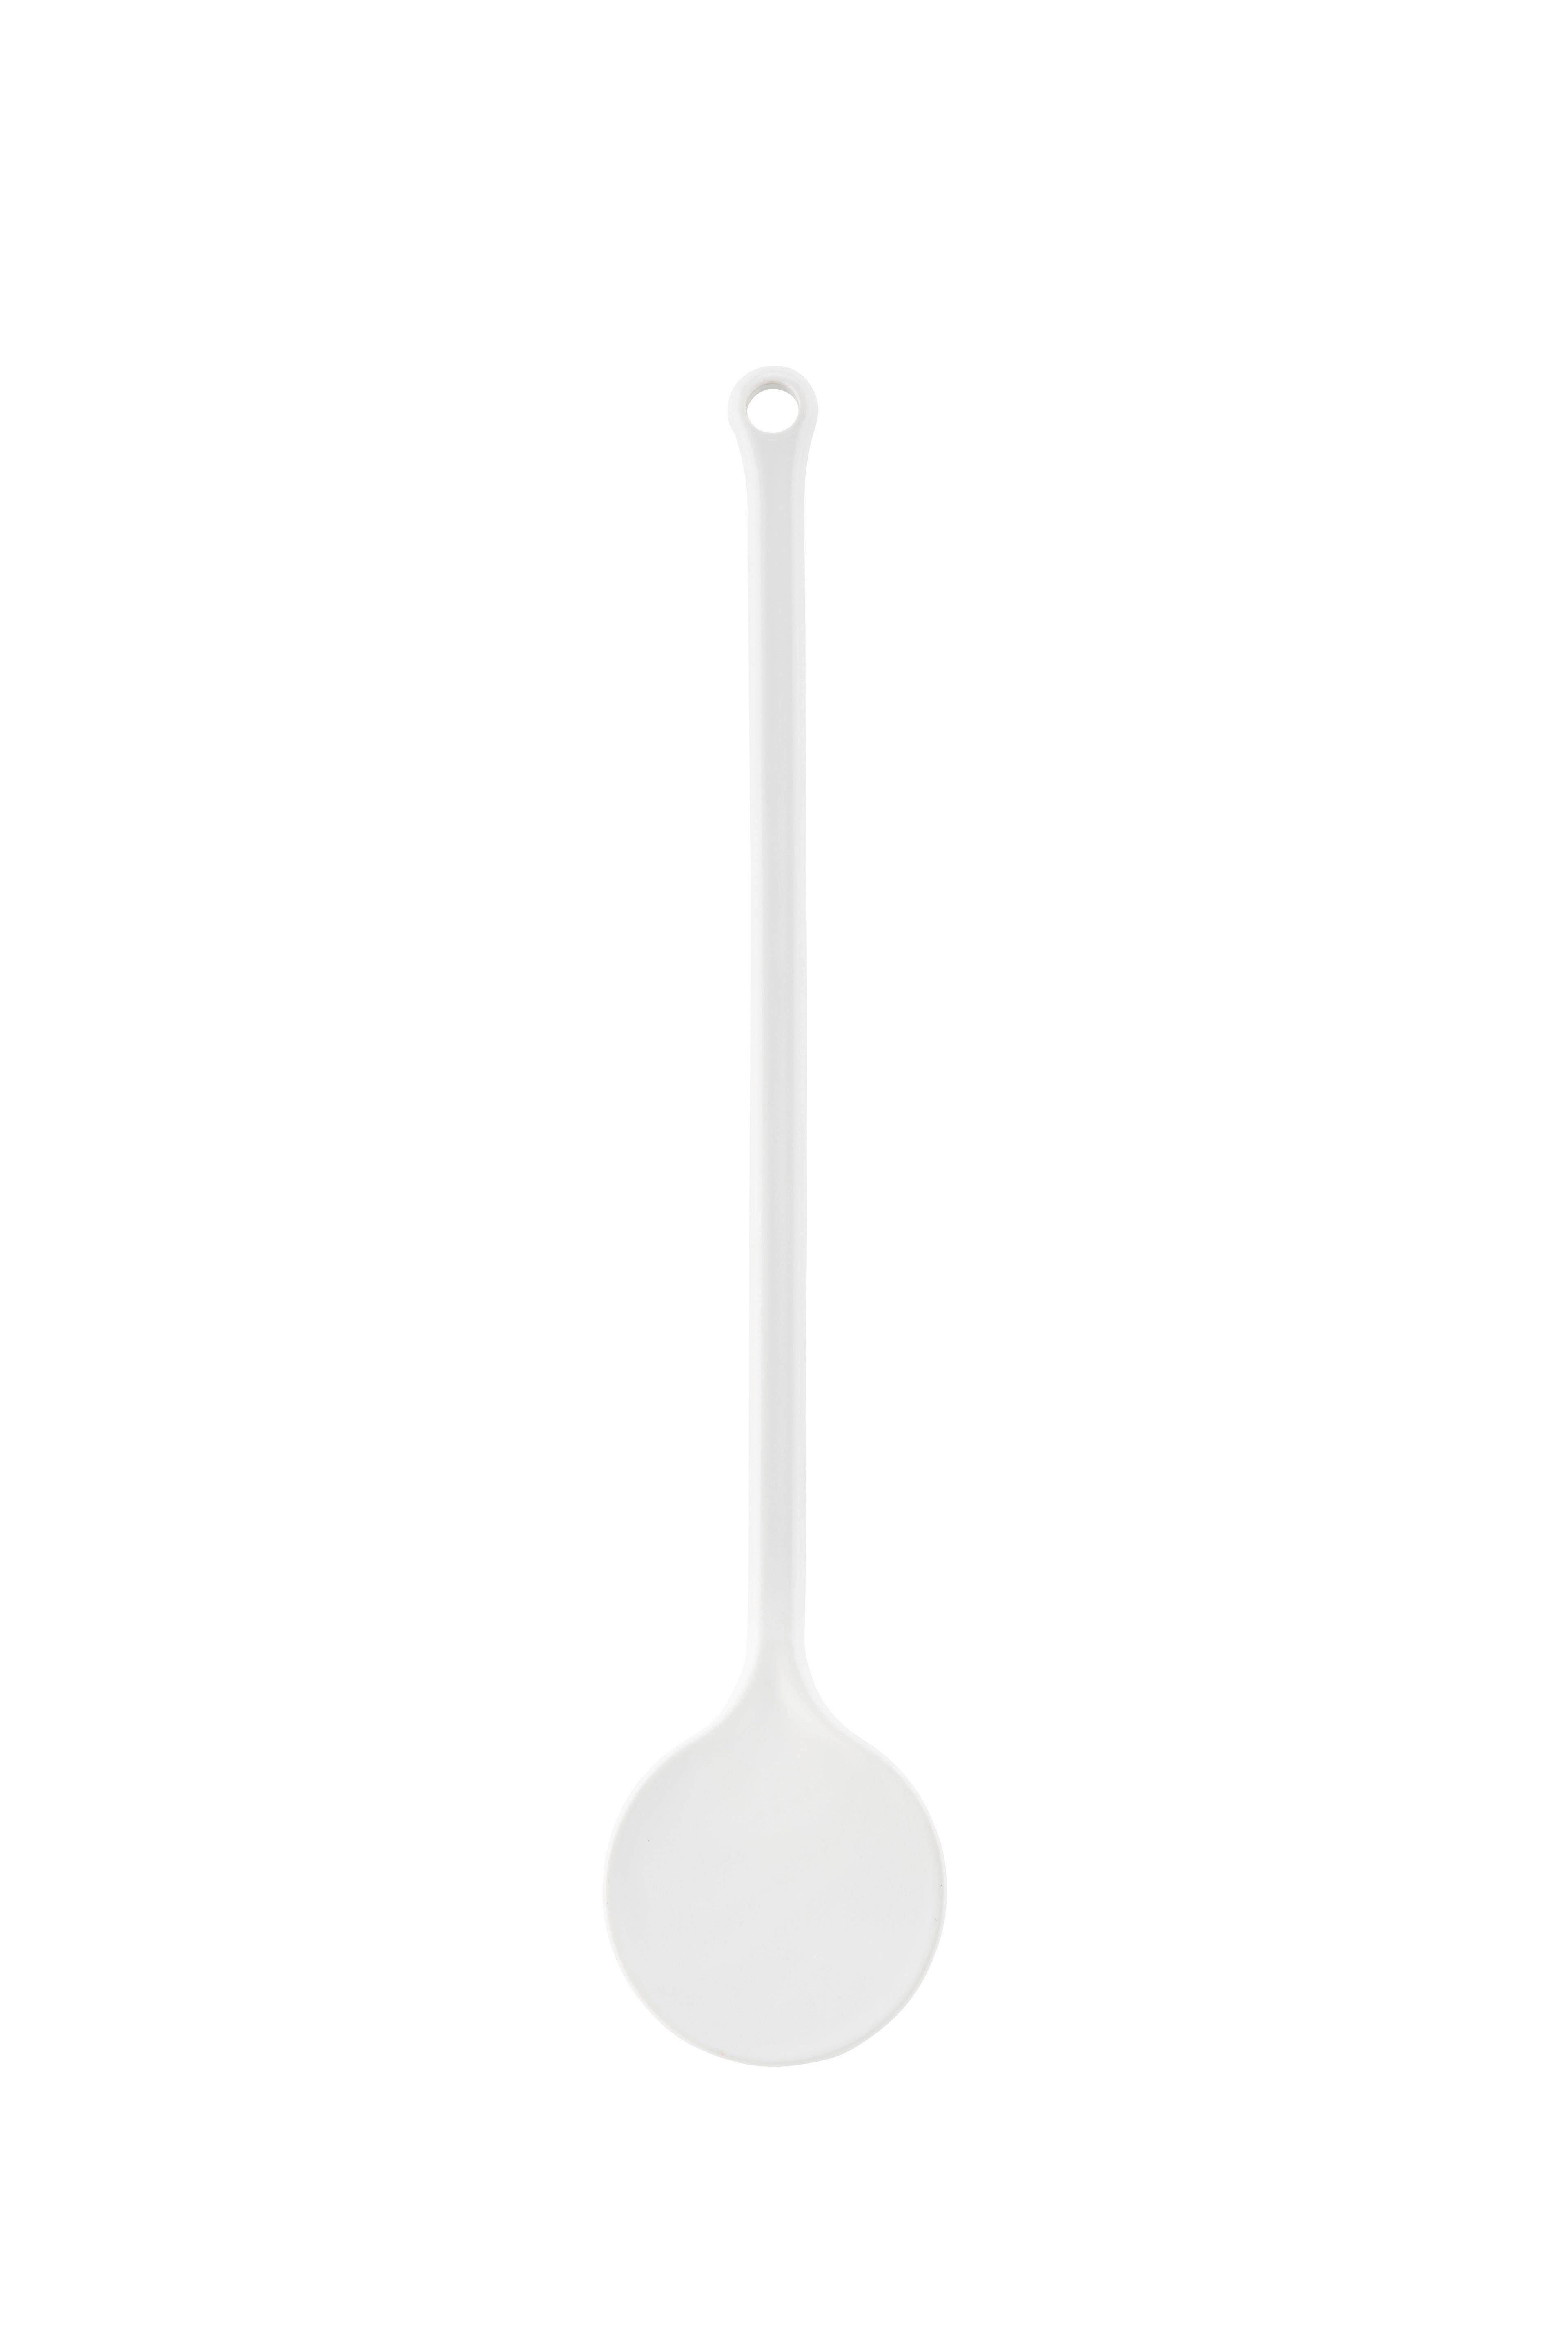 Ecoix Mikrowellenbehälter Abdeckung Mikrowelle, Deckel Haube,  spülmaschinenfest ø 26,5cm